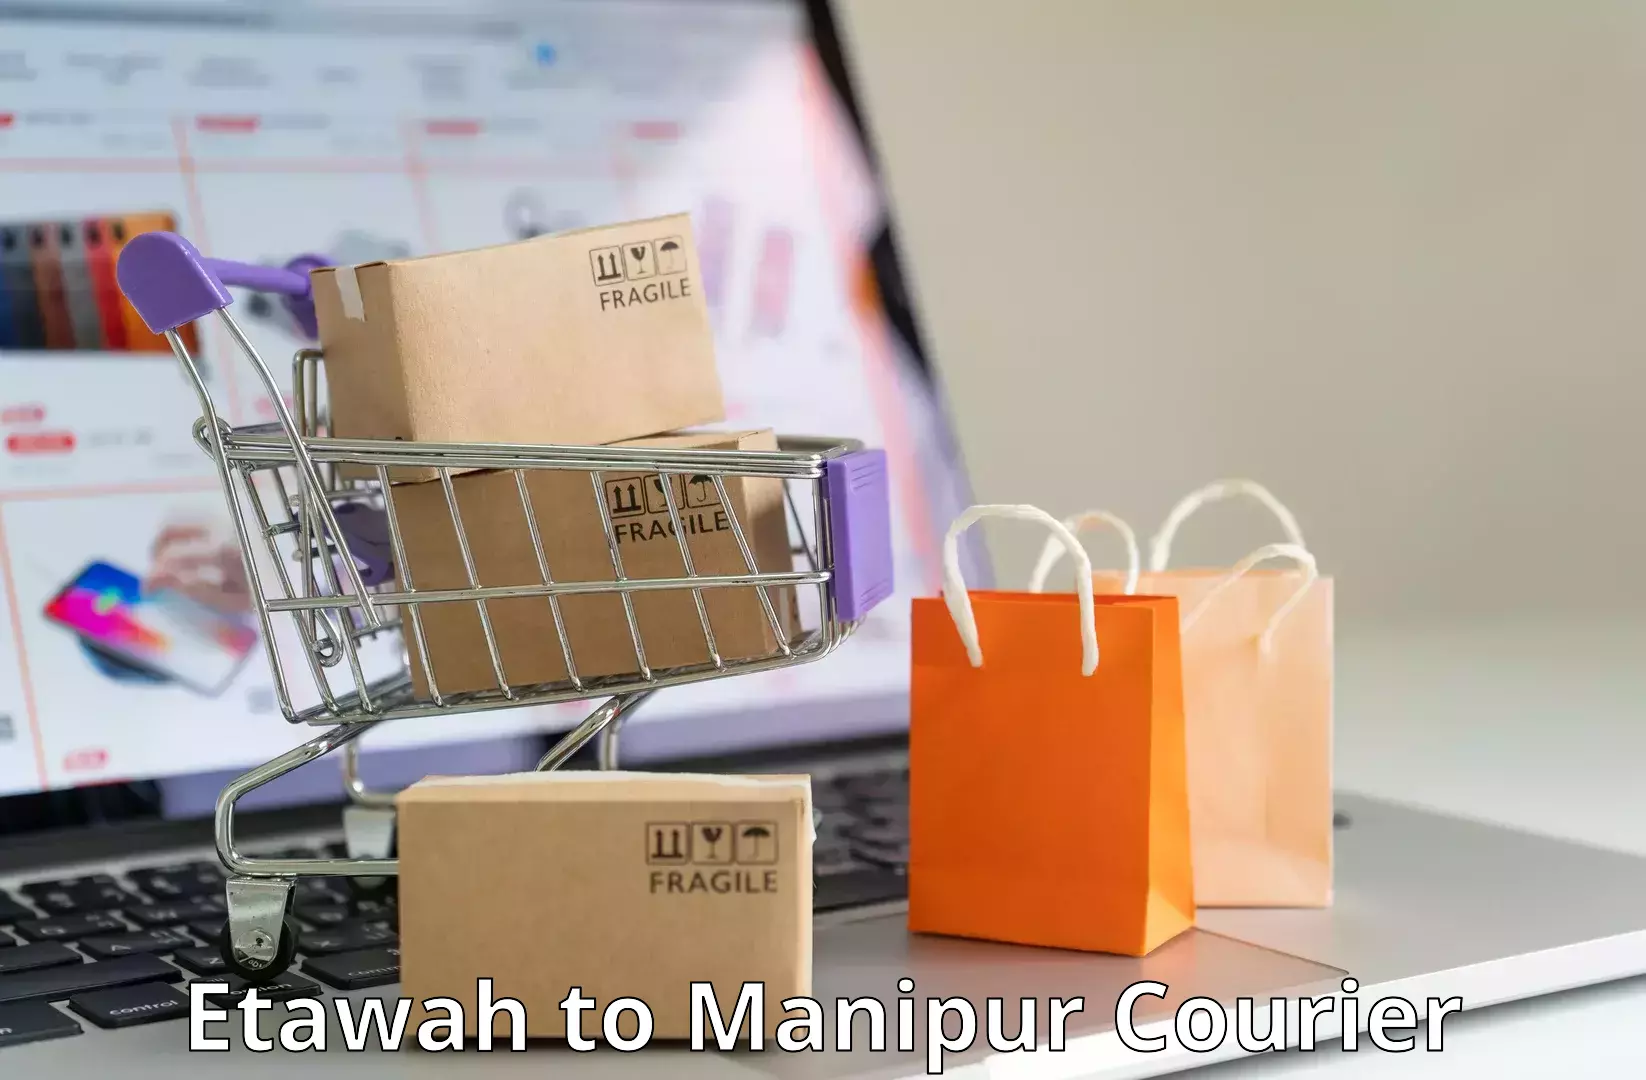 Express logistics service in Etawah to Manipur